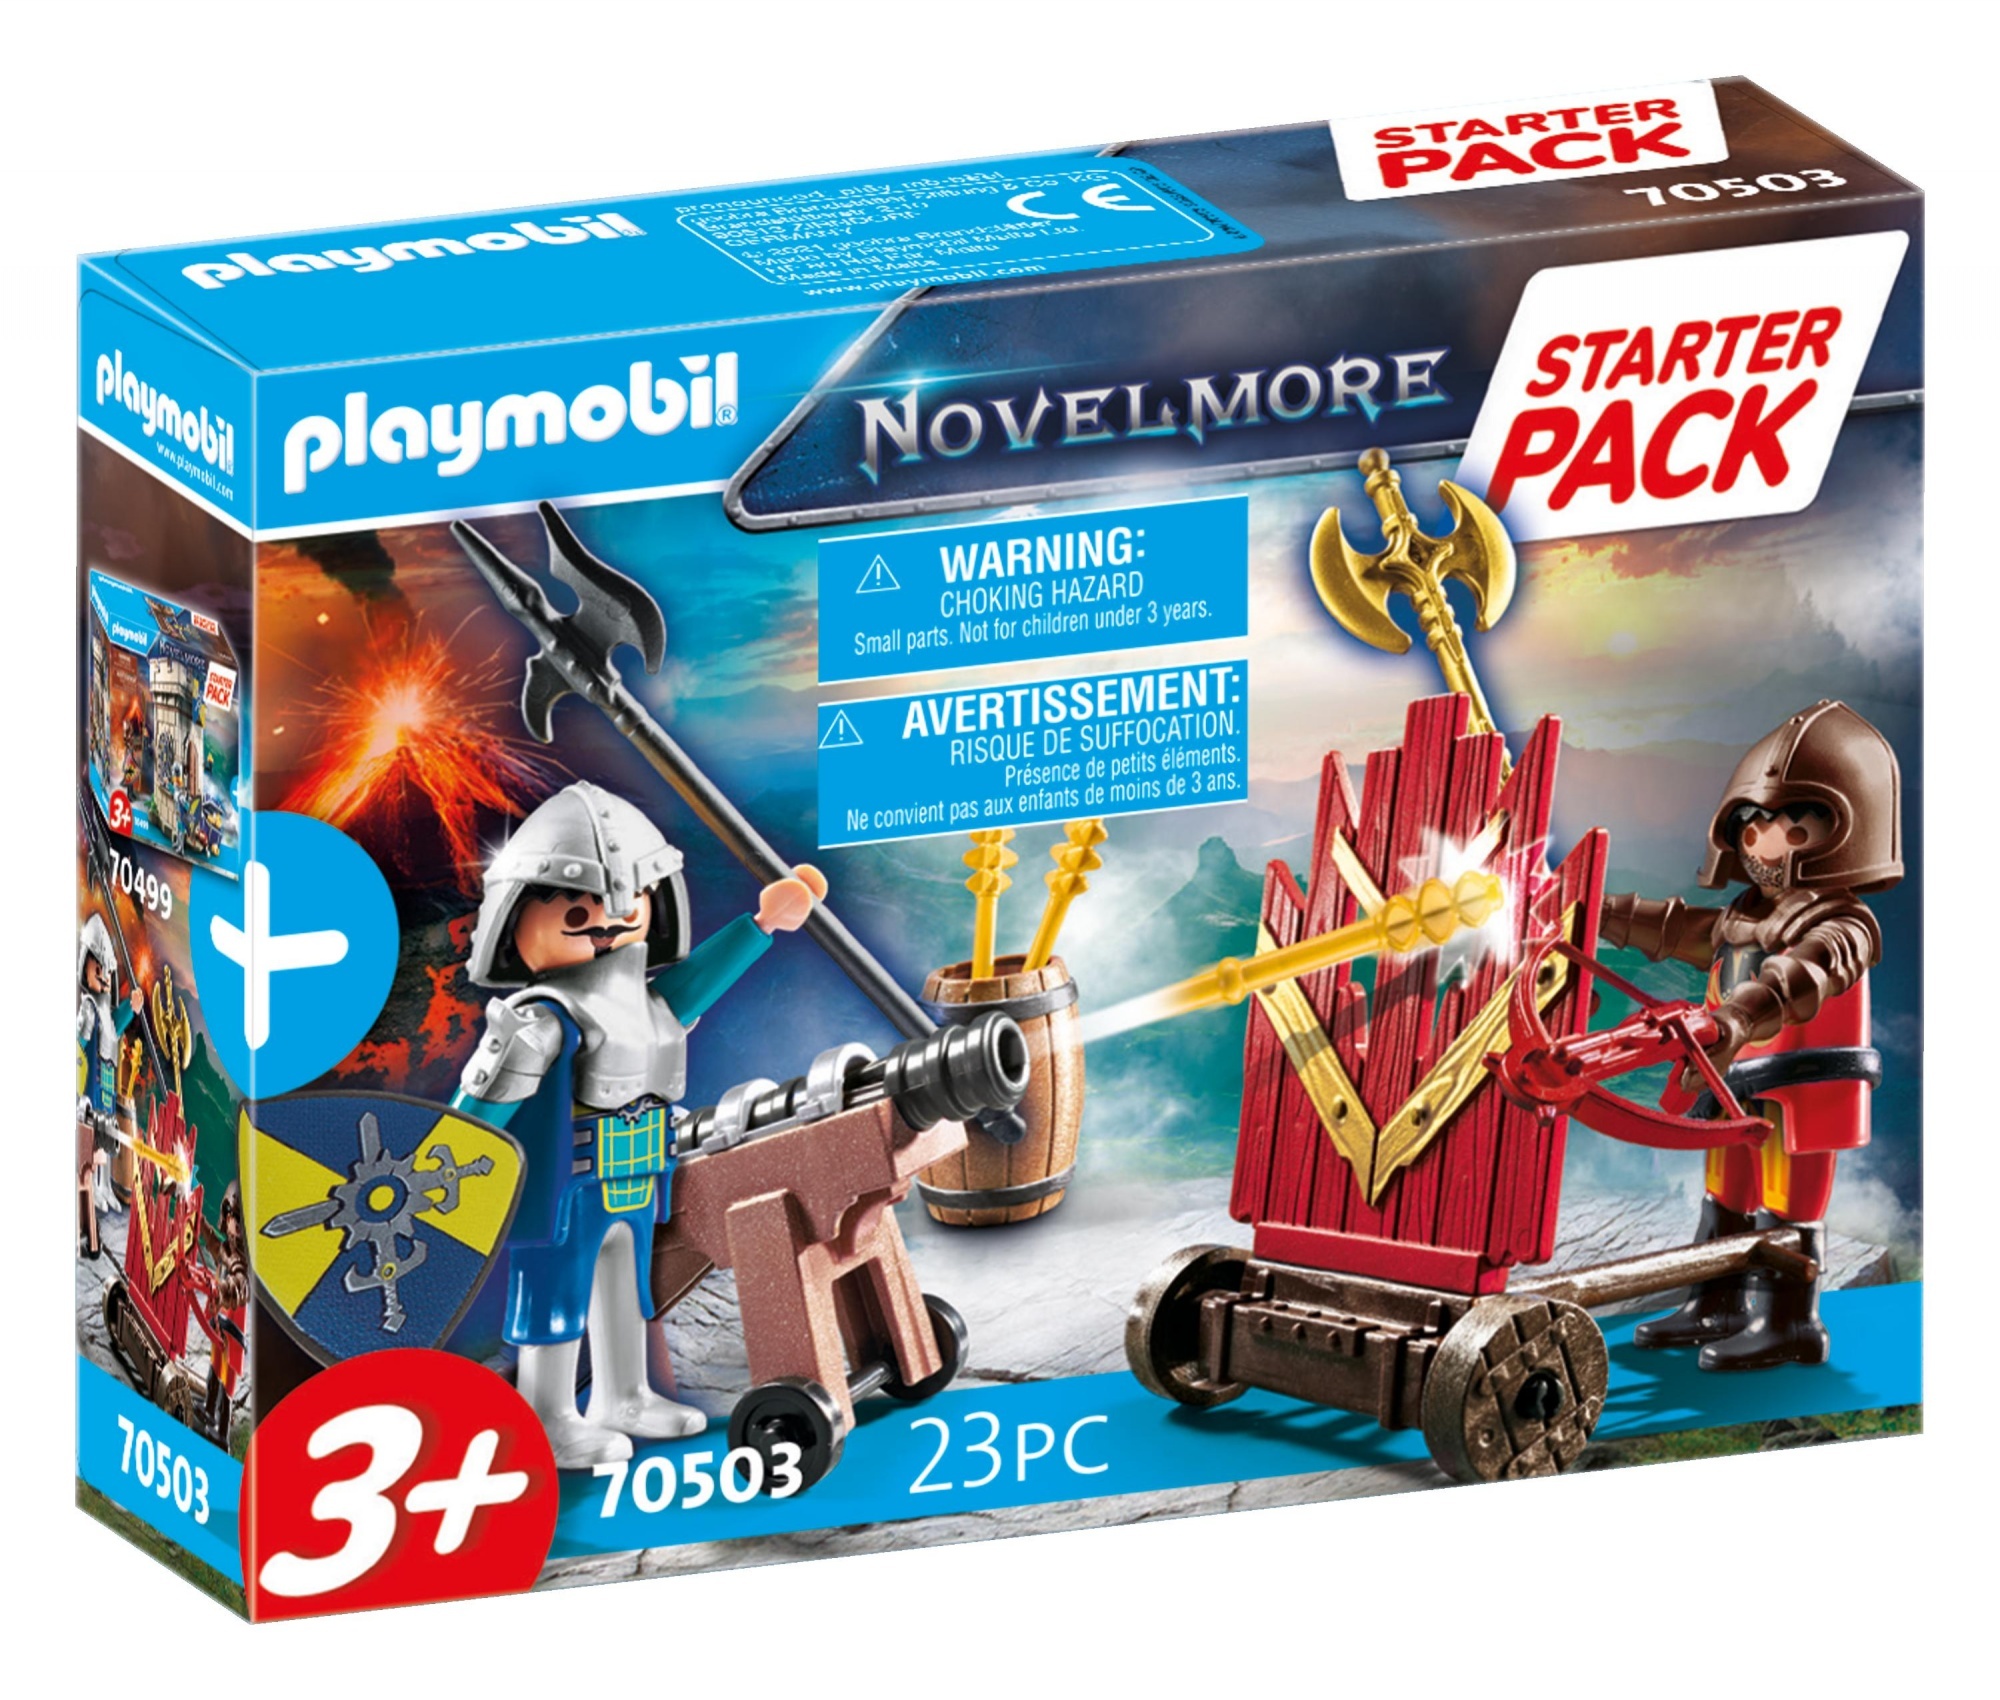 playmobil Novelmore Playmobil 70503 Starterpack Novelmore Uitbreiding